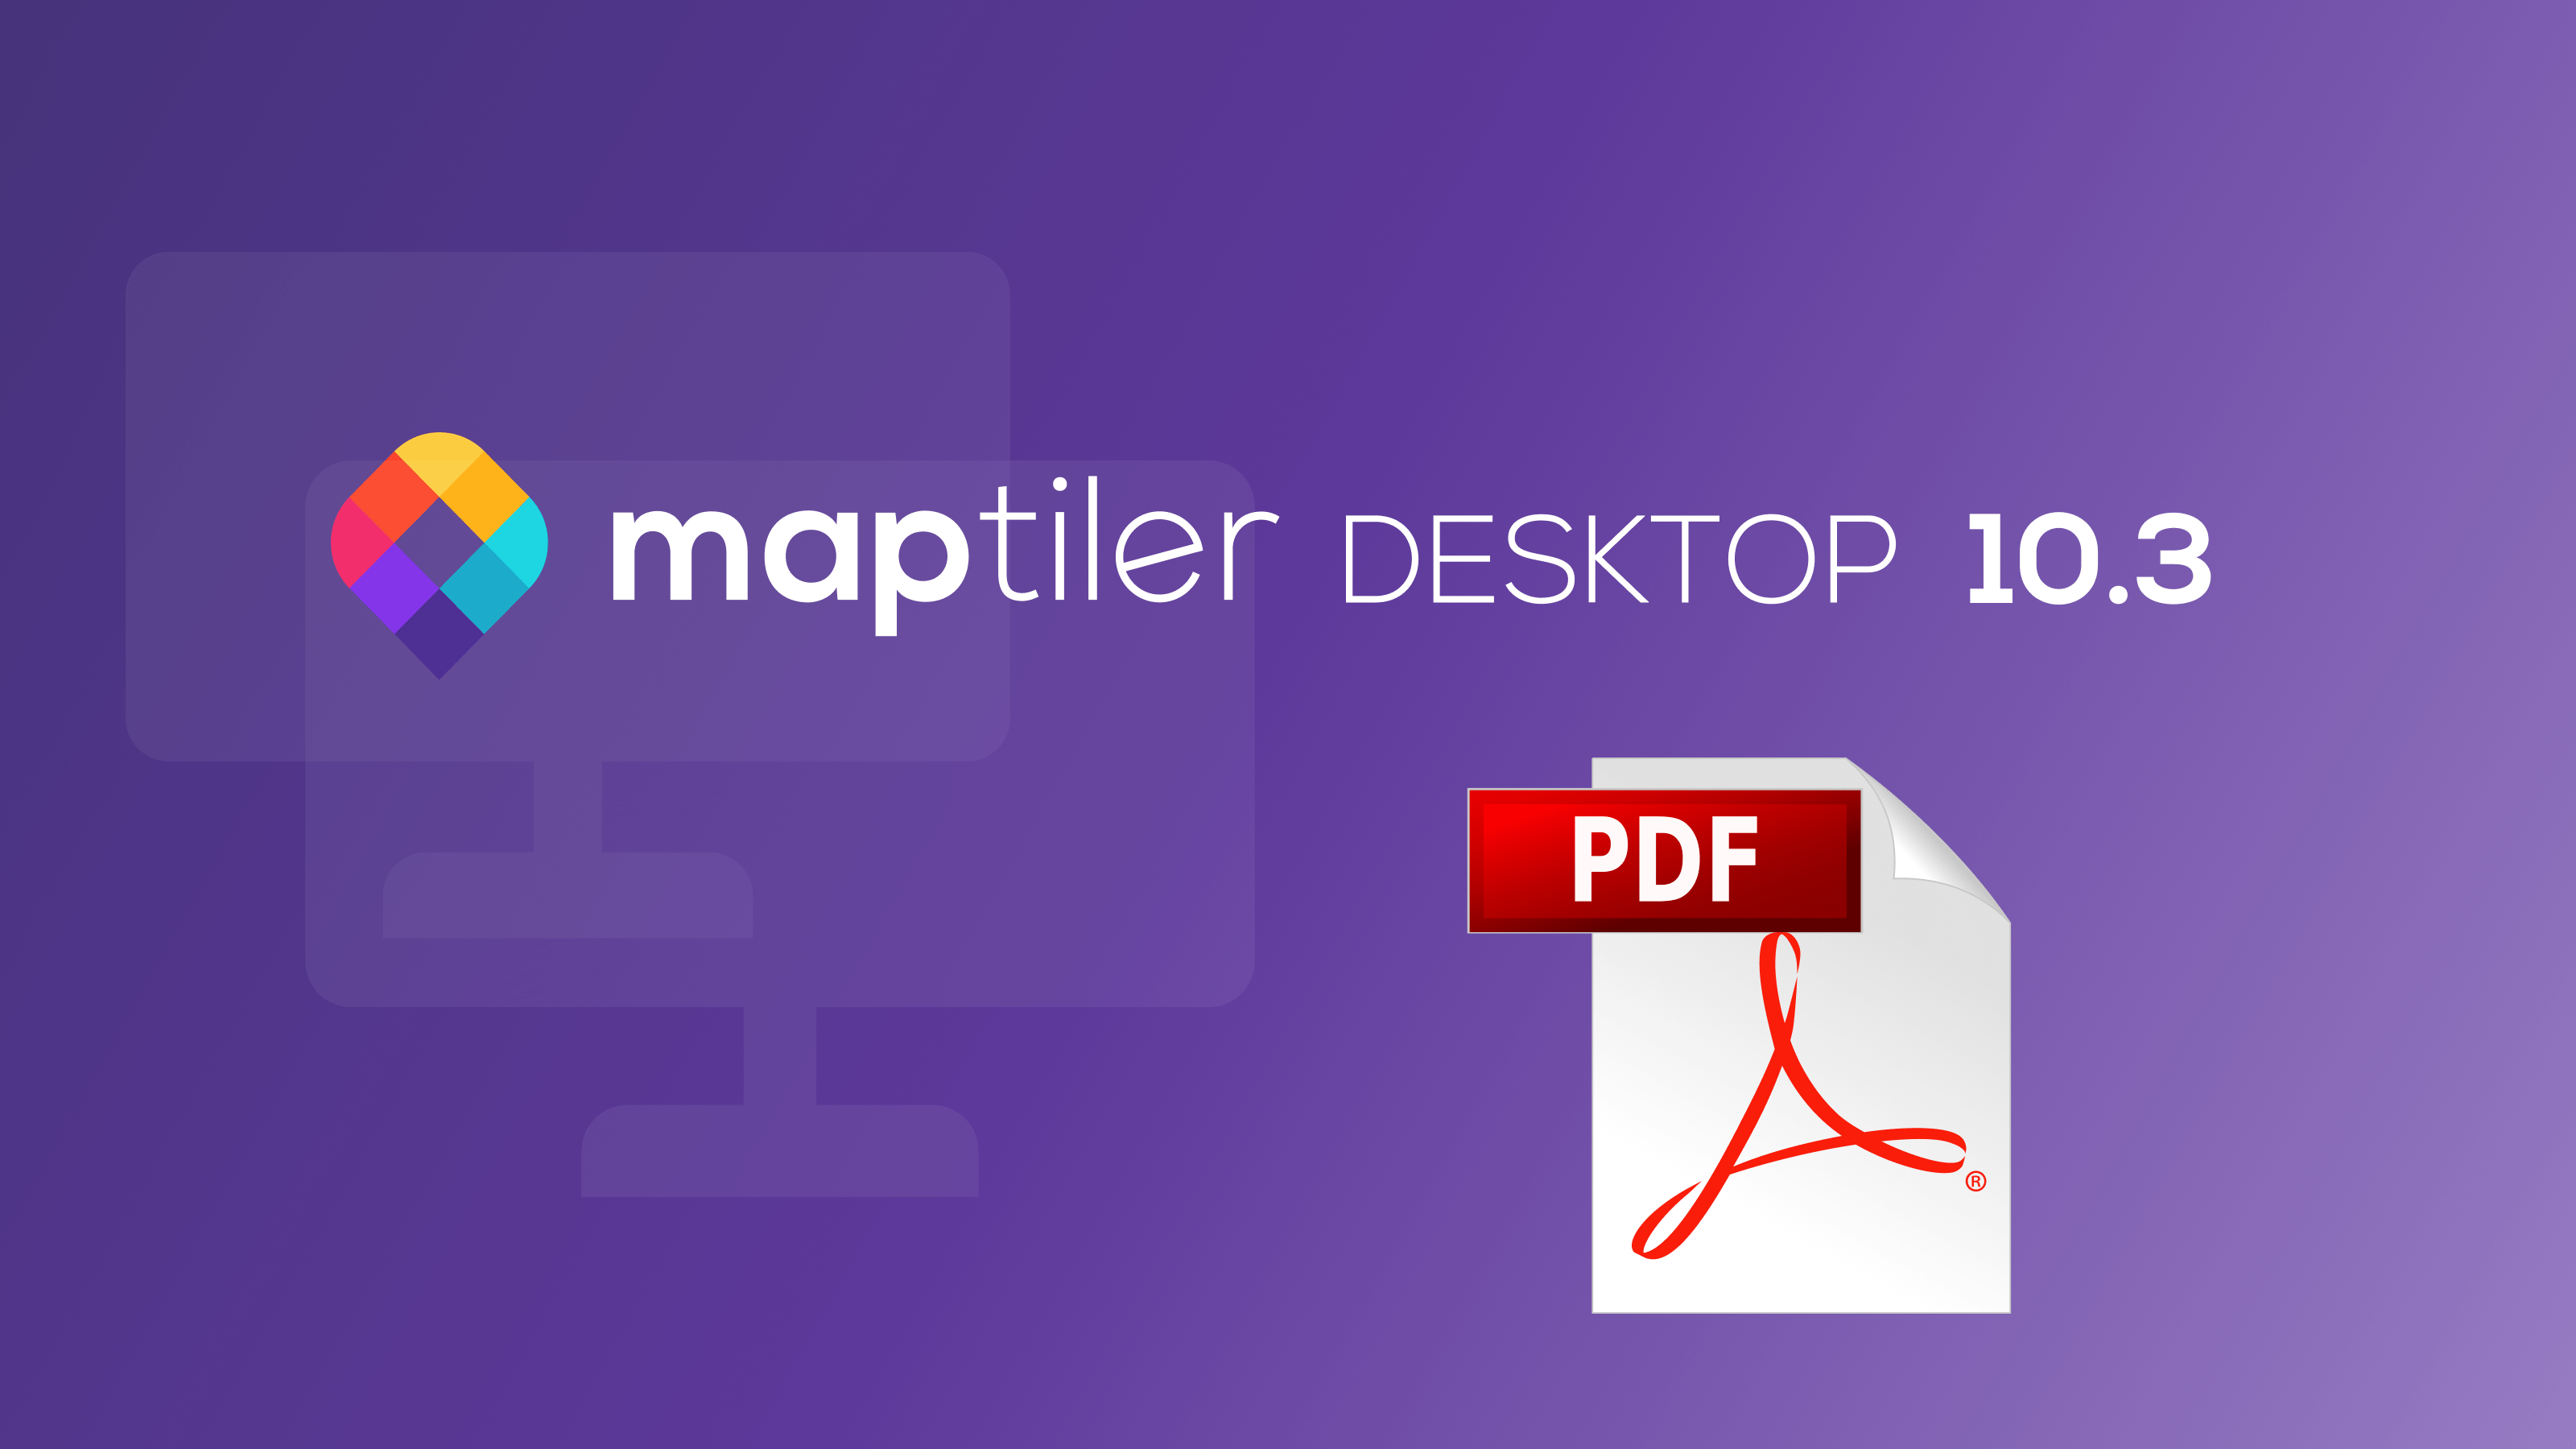 MapTiler Desktop 10.3 image